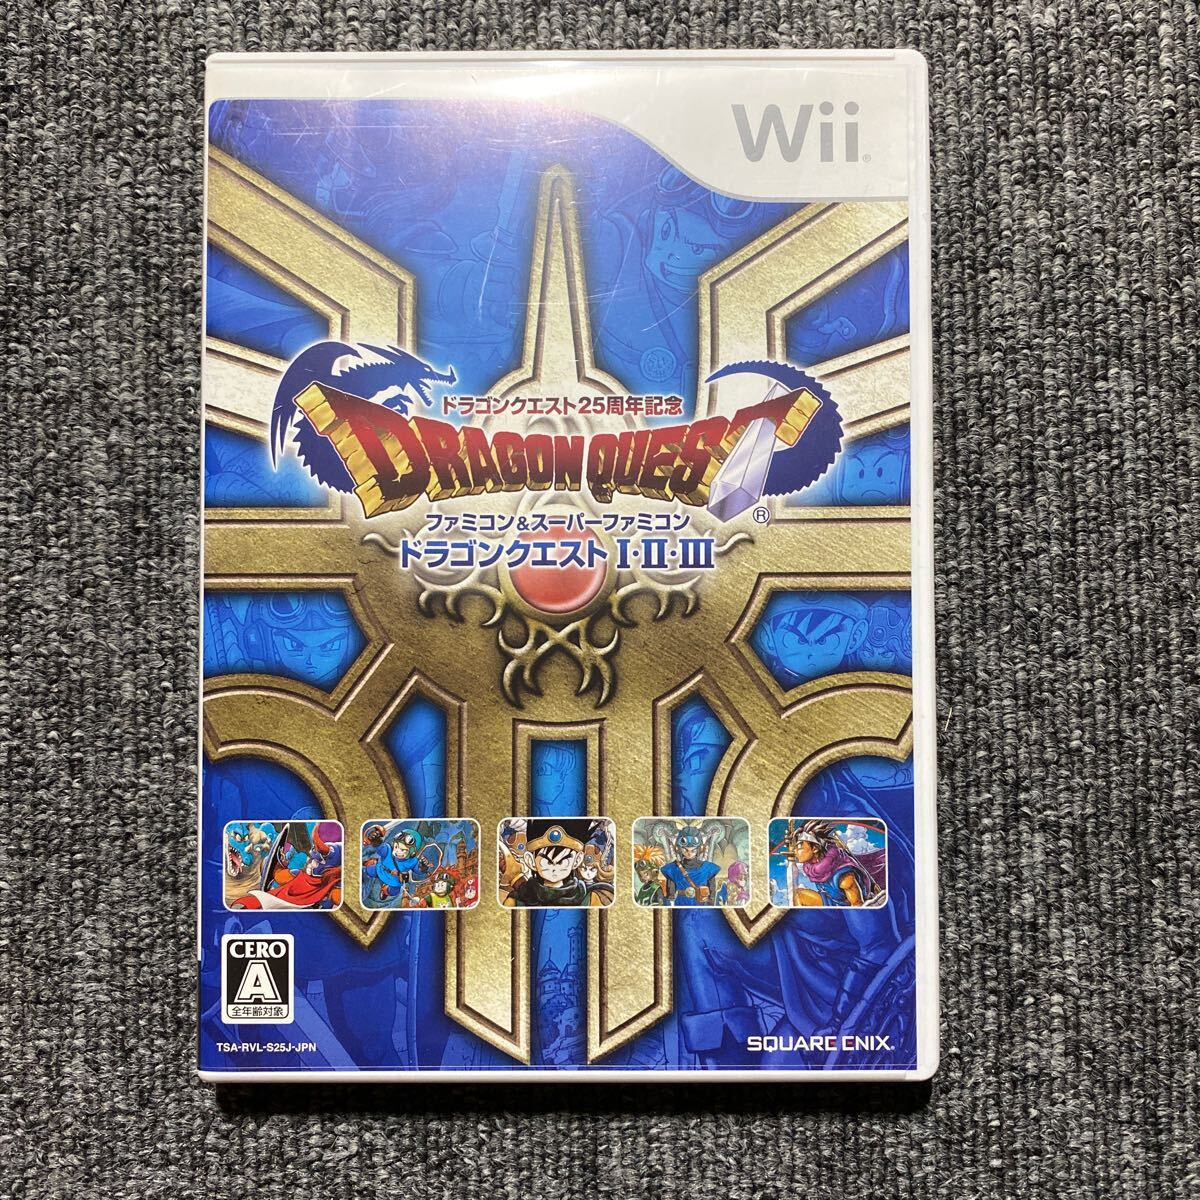 Wii ドラゴンクエストI・II・III ソフト単品